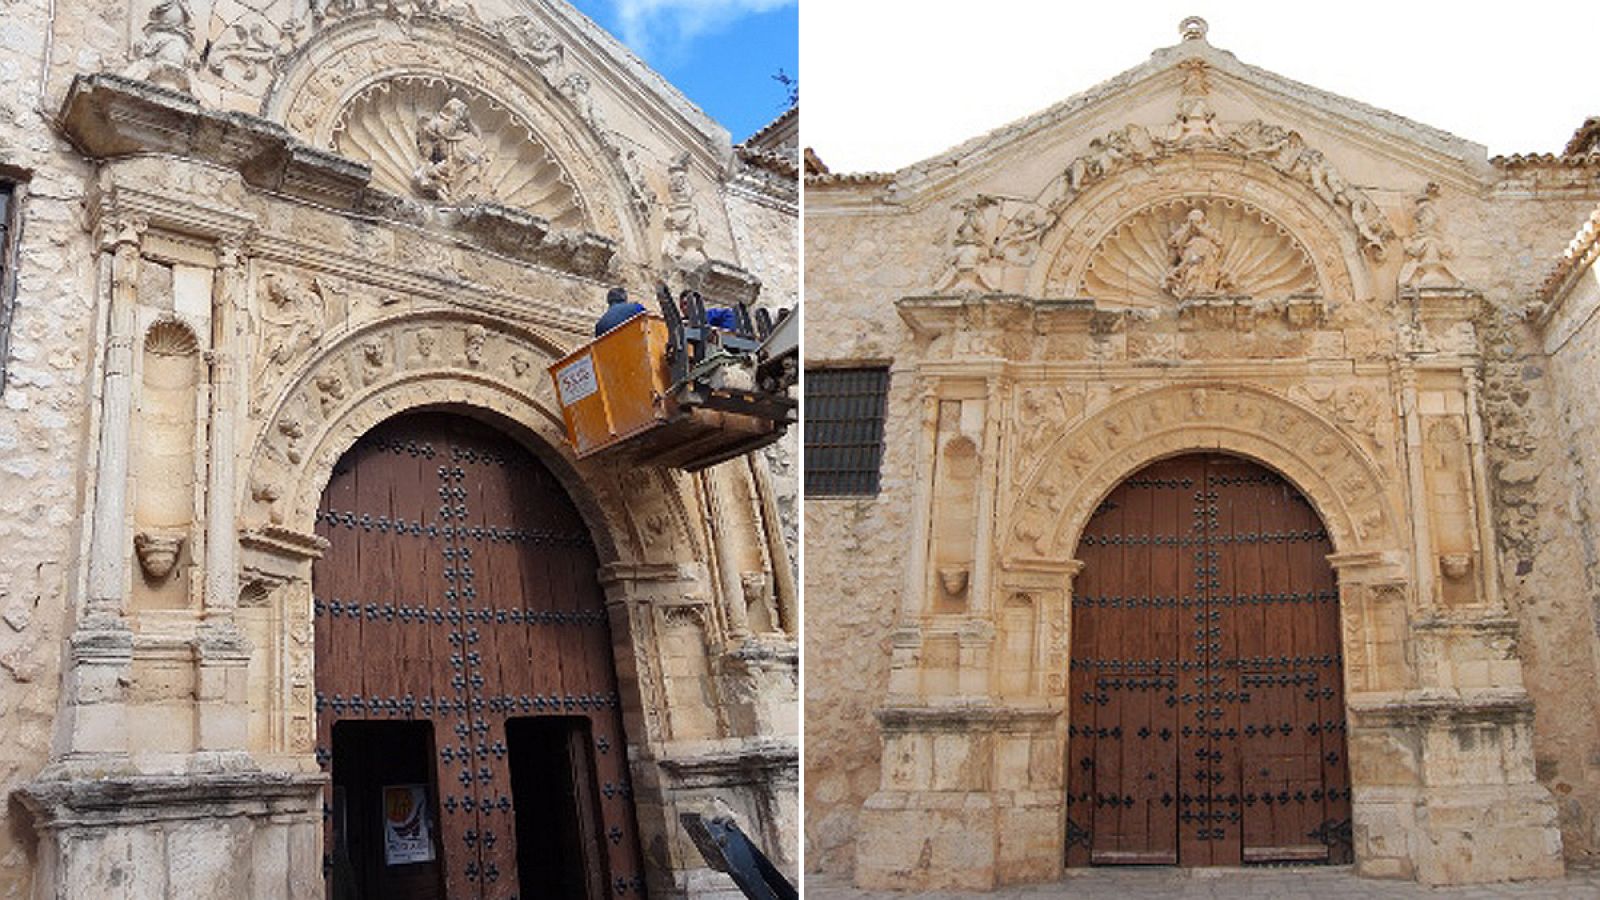 Portada principal de la iglesia de Nuestra Señora de la Asunción de Corral de Almaguer (Toledo).